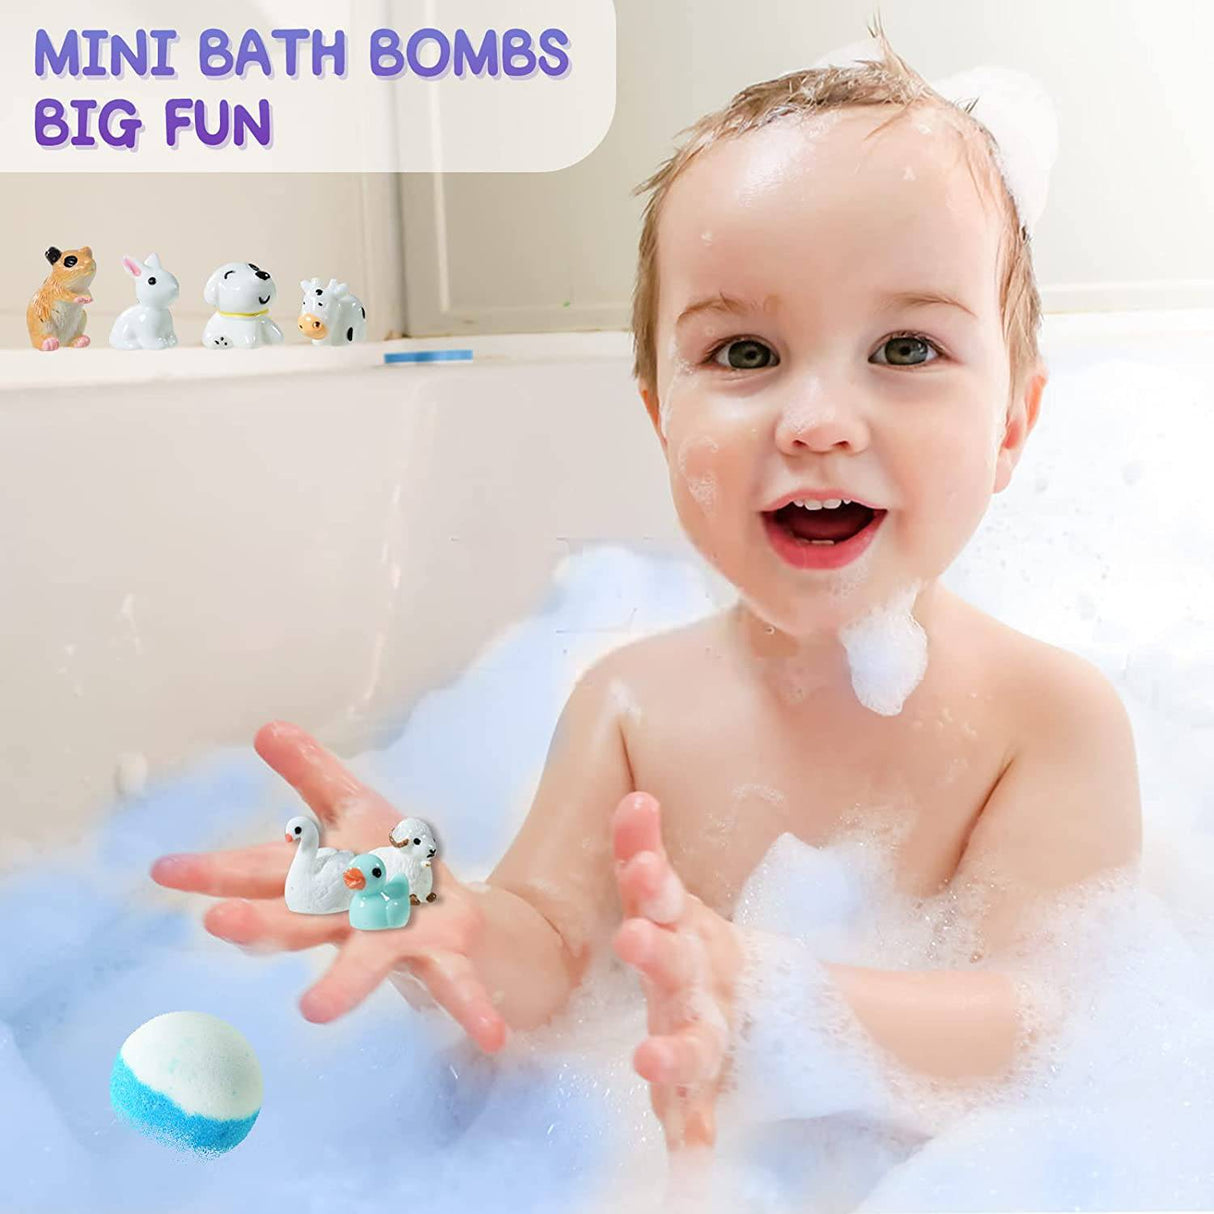  Bombas de baño con juguetes sorpresa en el interior